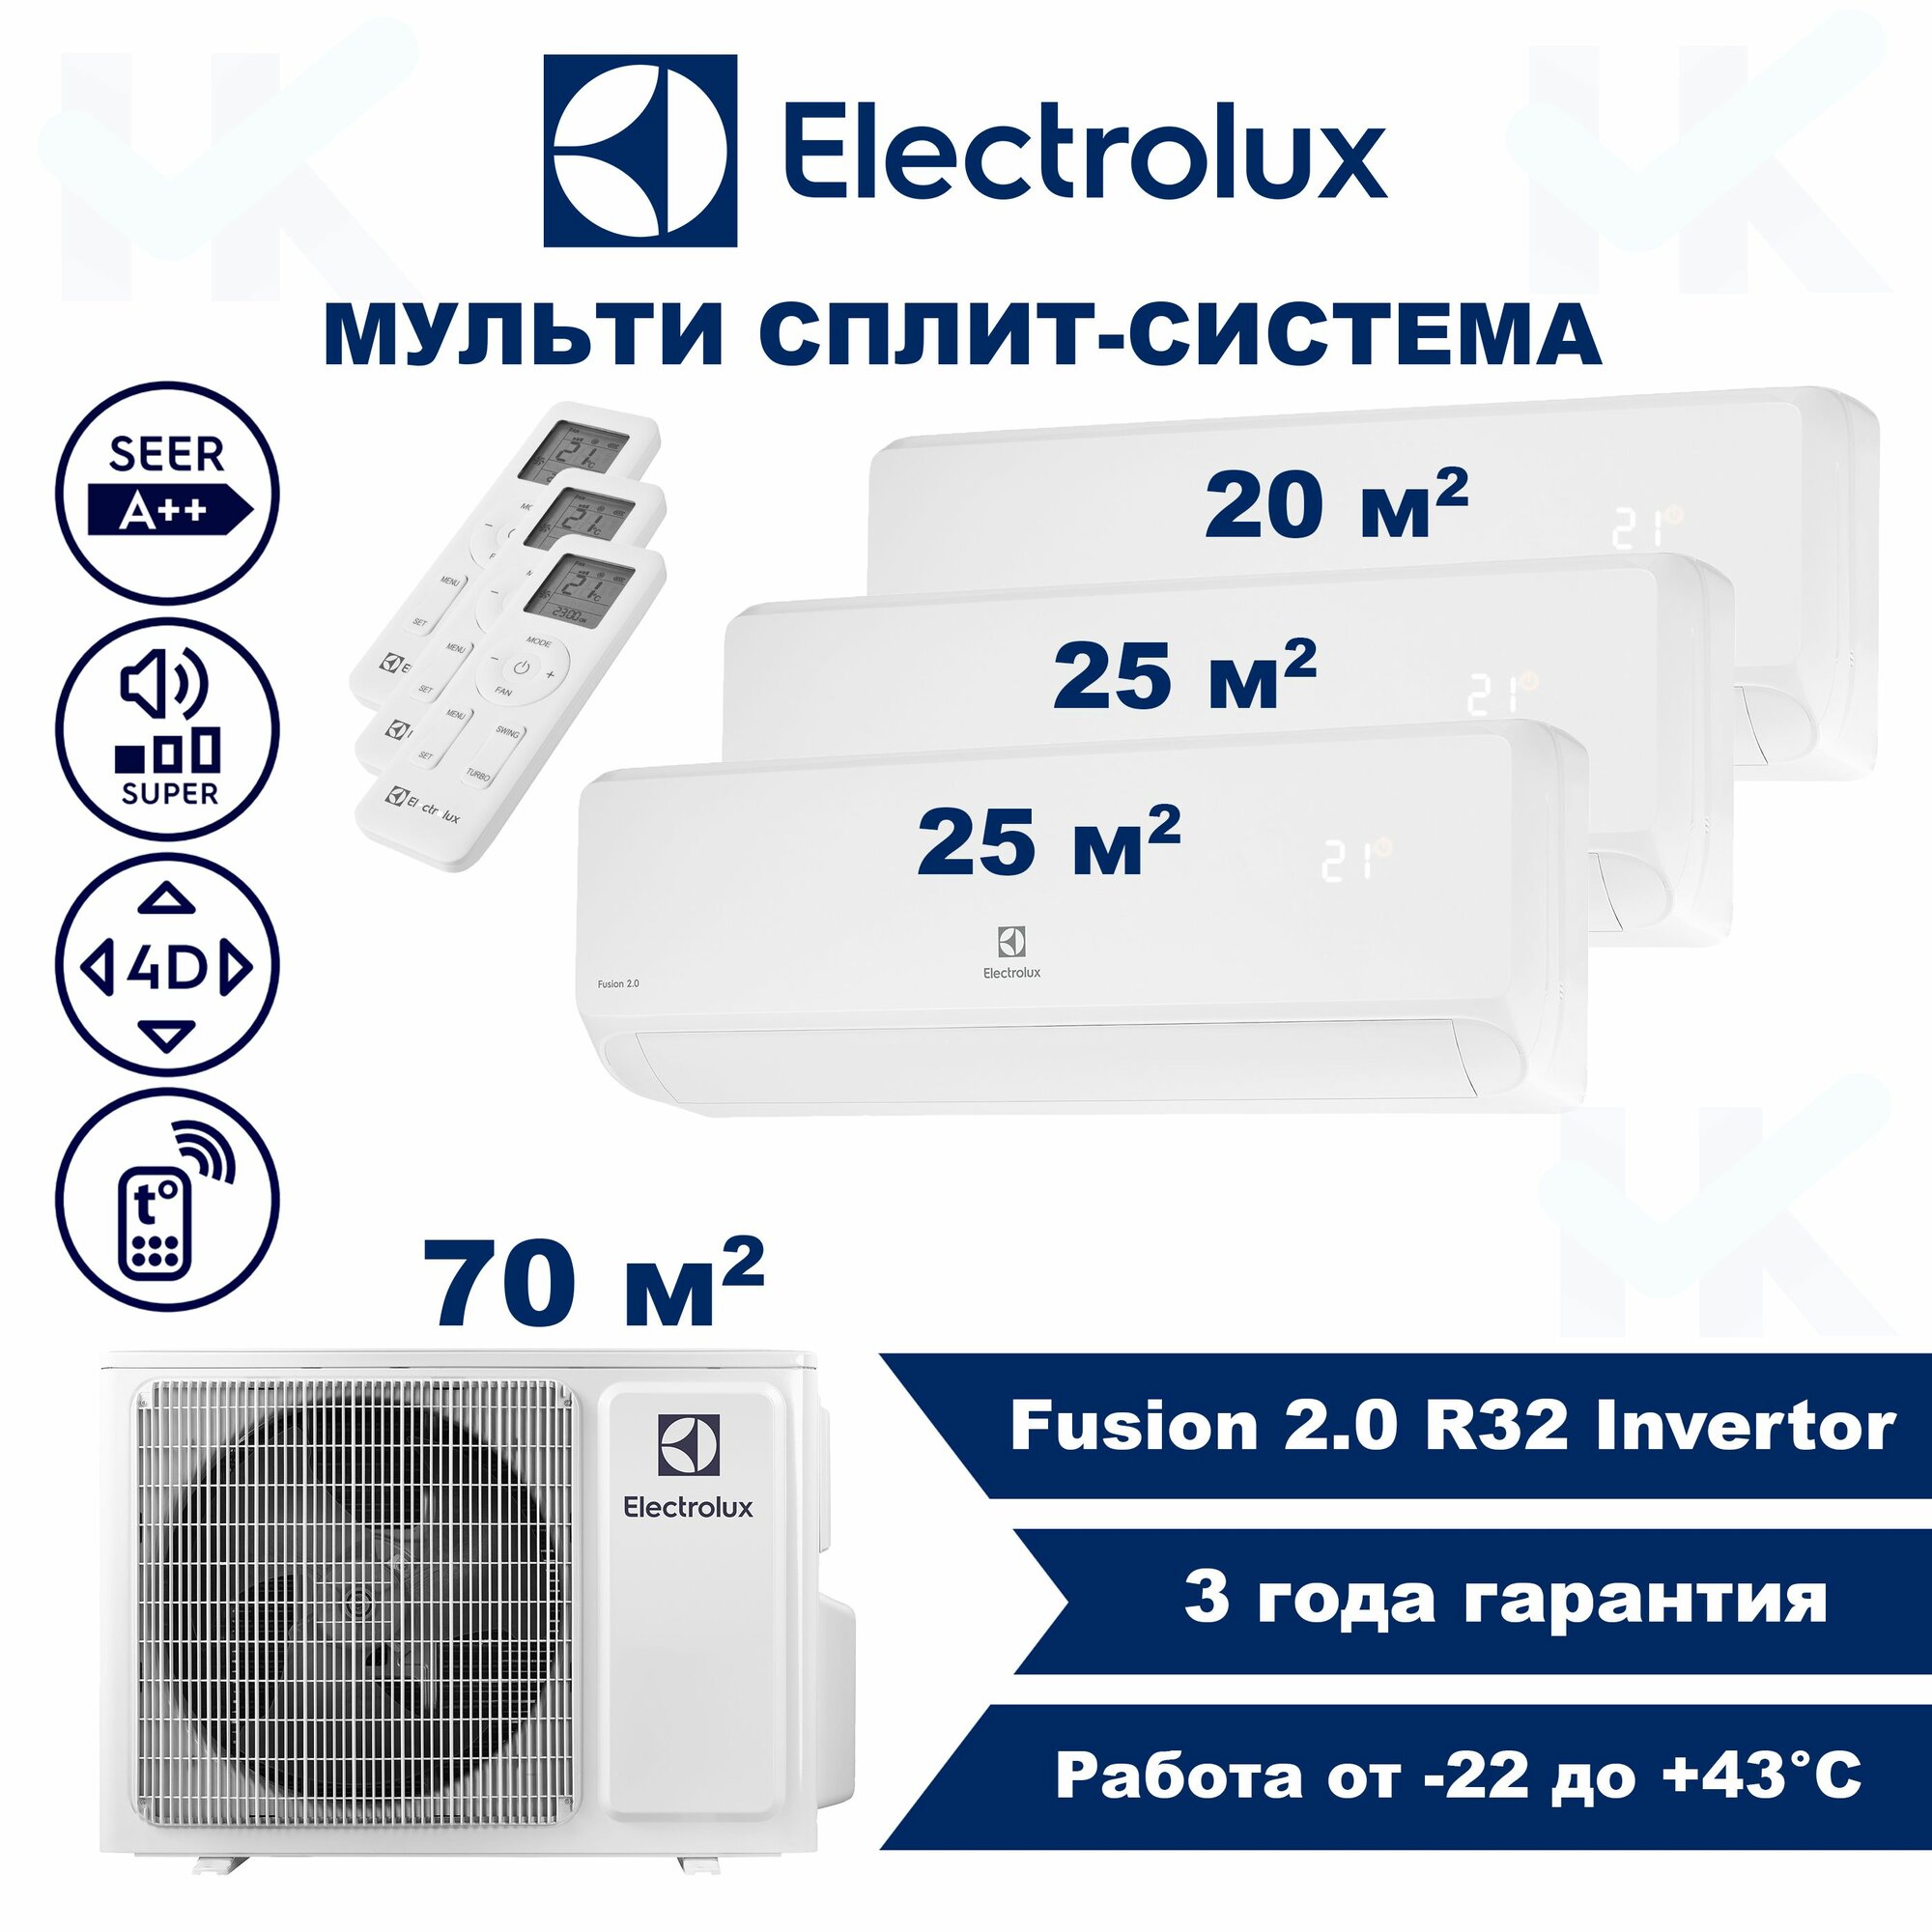 Инверторная мульти сплит-система ELECTROLUX серии Fusion 2.0 на 3 комнаты (20 м2 + 25 м2 + 25 м2) с наружным блоком 70 м2, Постоянная работа